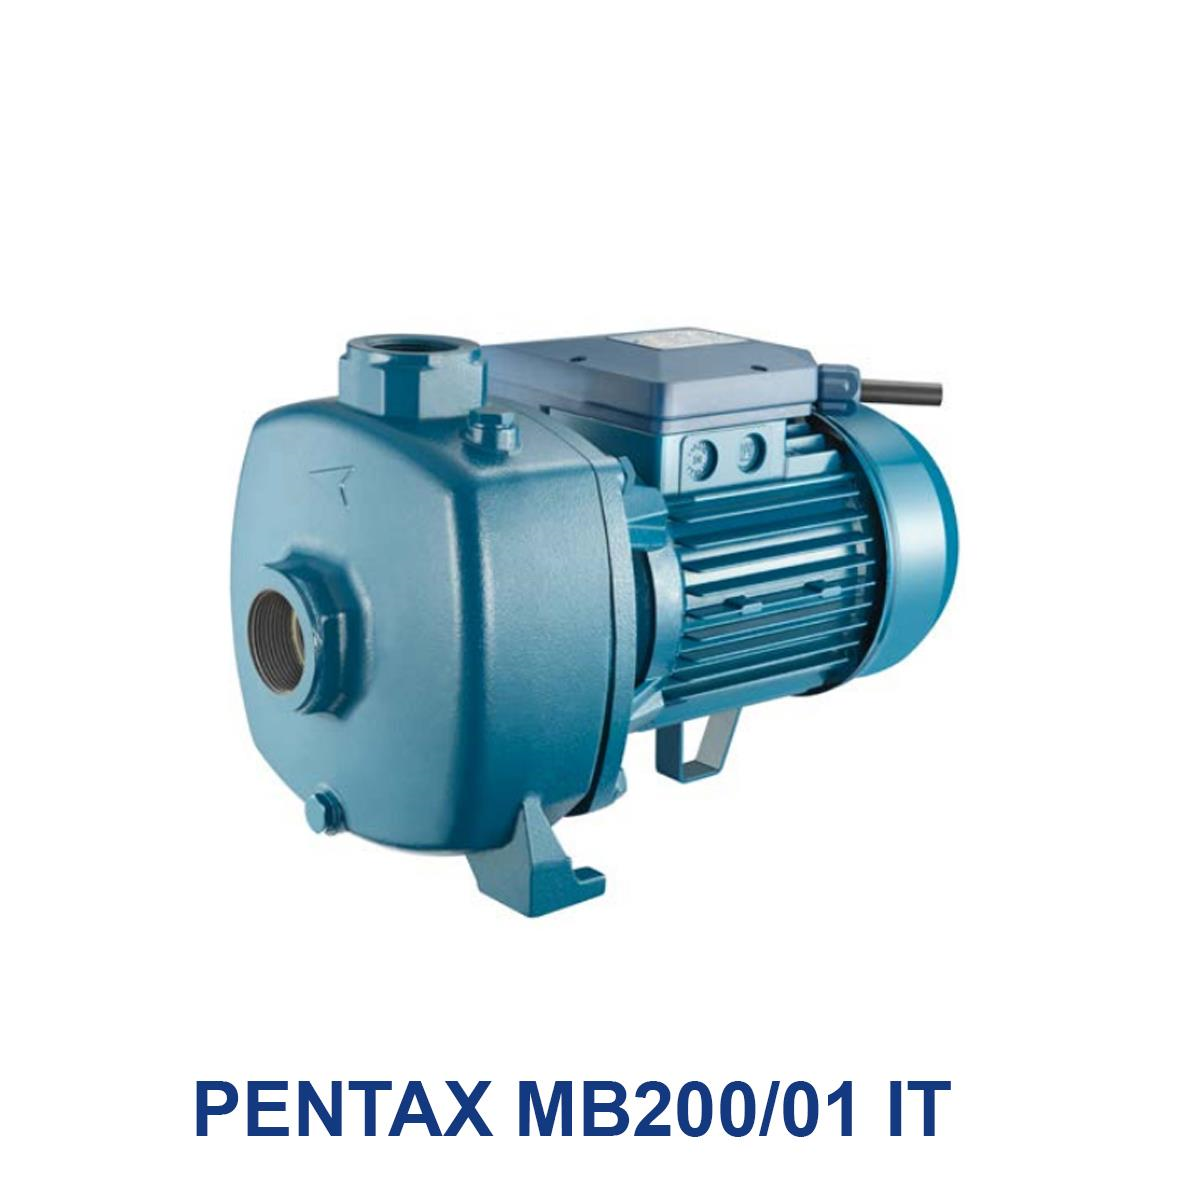 PENTAX-MB200-01-IT